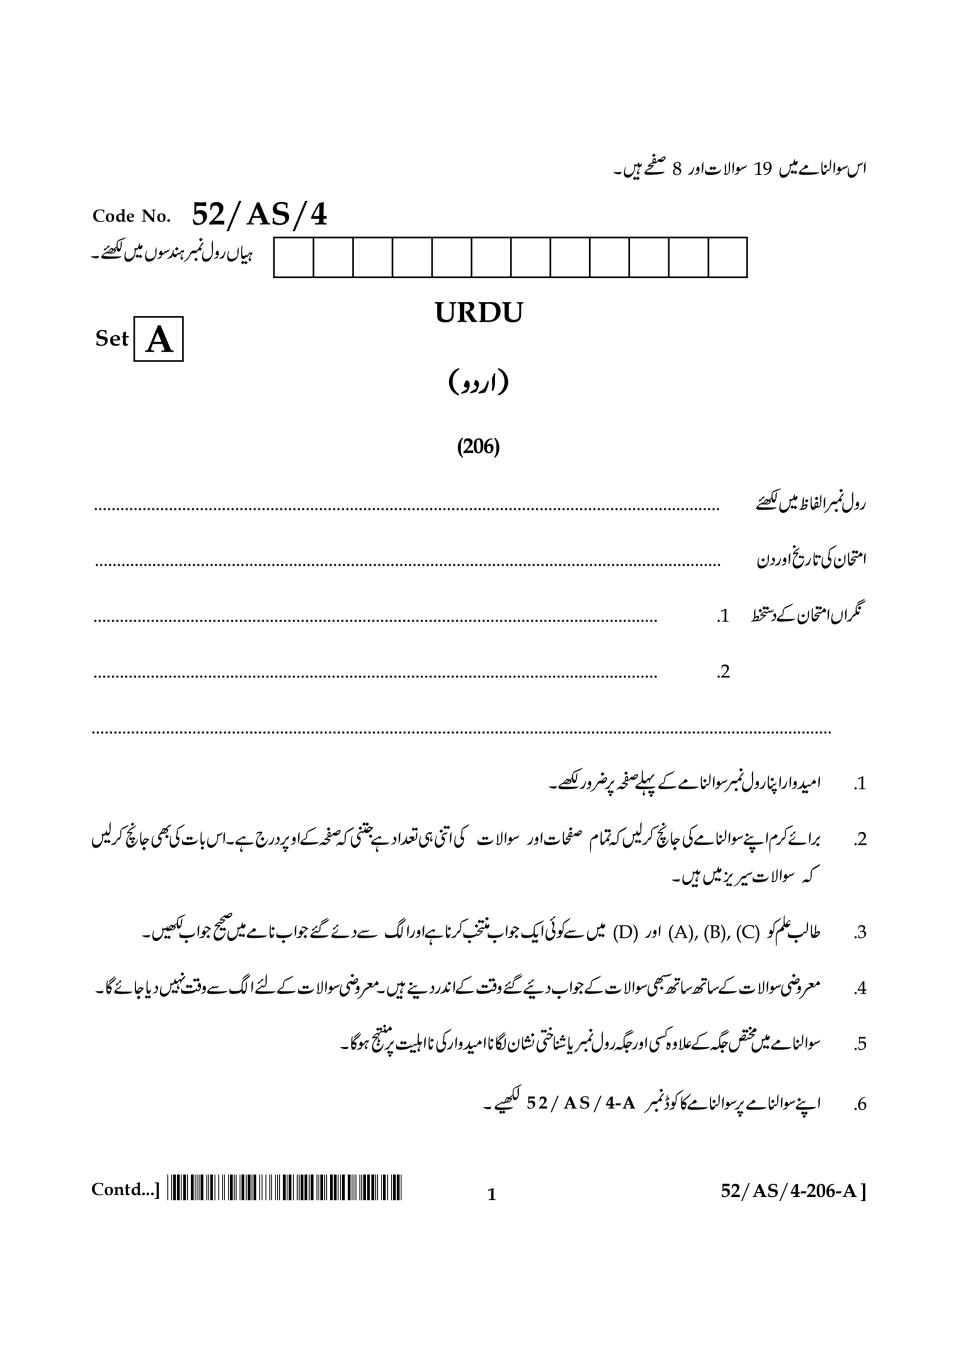 NIOS Class 10 Question Paper Apr 2016 - Urdu - Page 1